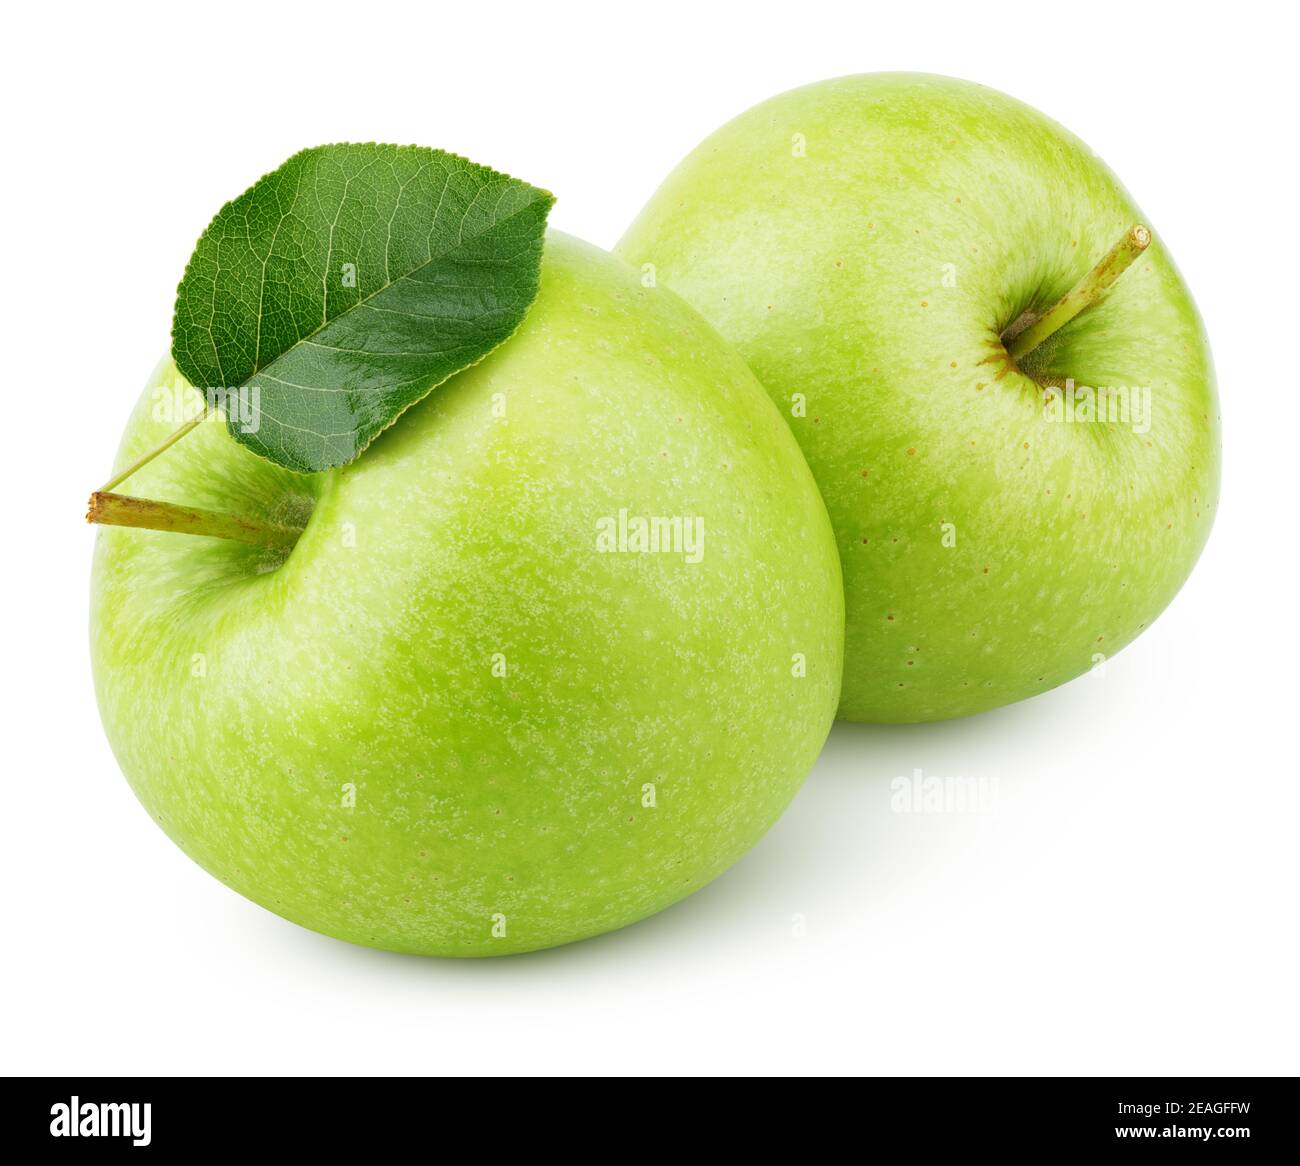 Due mele verdi mature con foglie di mela isolate su sfondo bianco. Mele verdi con percorso di ritaglio Foto Stock